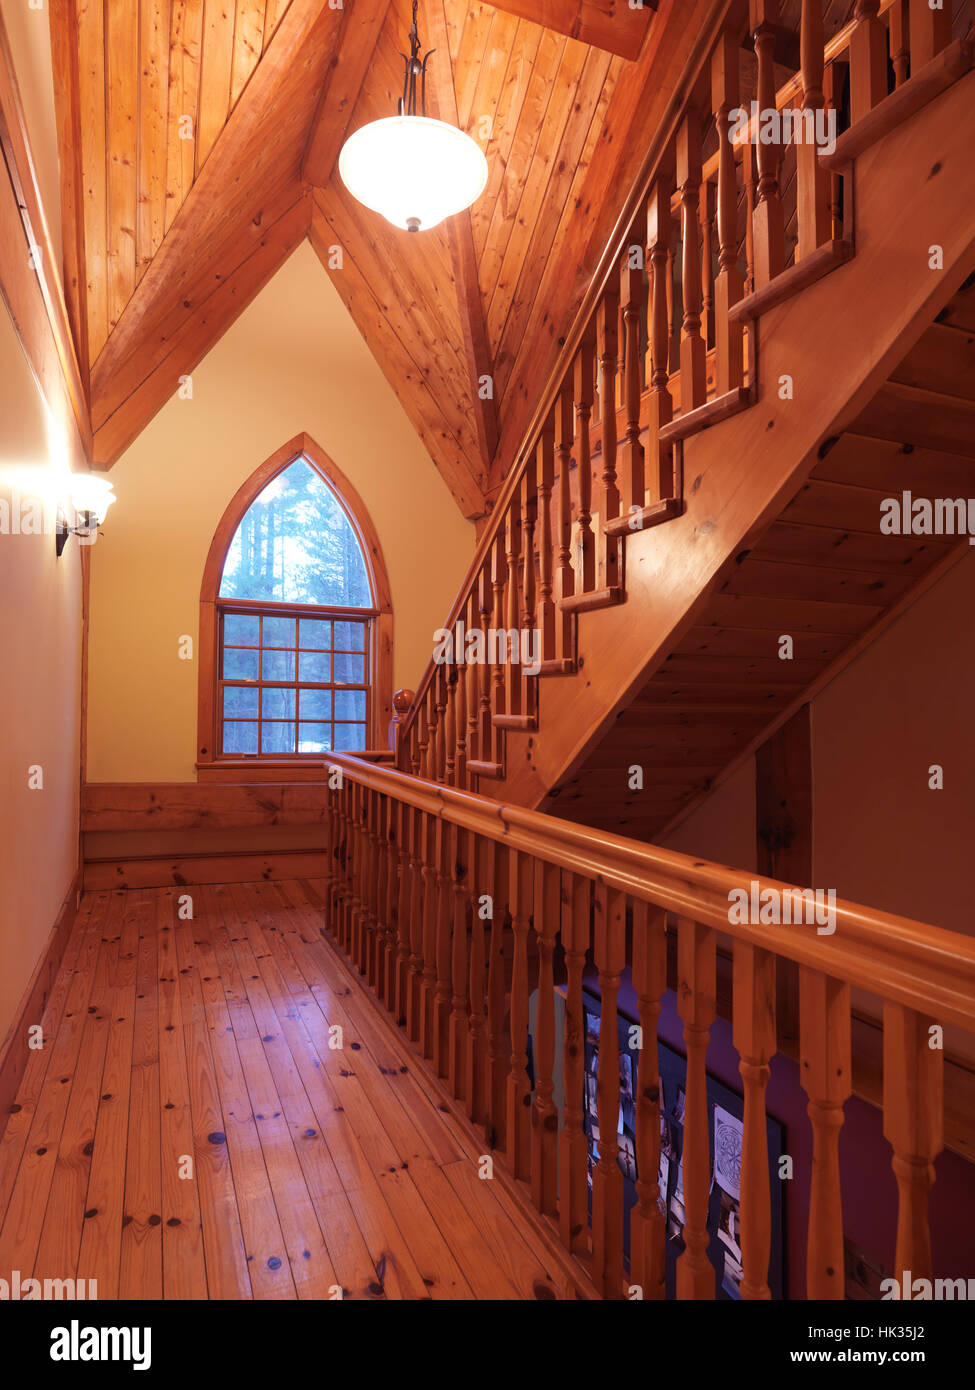 In legno in stile cottage Canadian country house hall interno con una scala in legno e un ad arco gotico Duomo finestra, Muskoka, Ontario, Canada Foto Stock